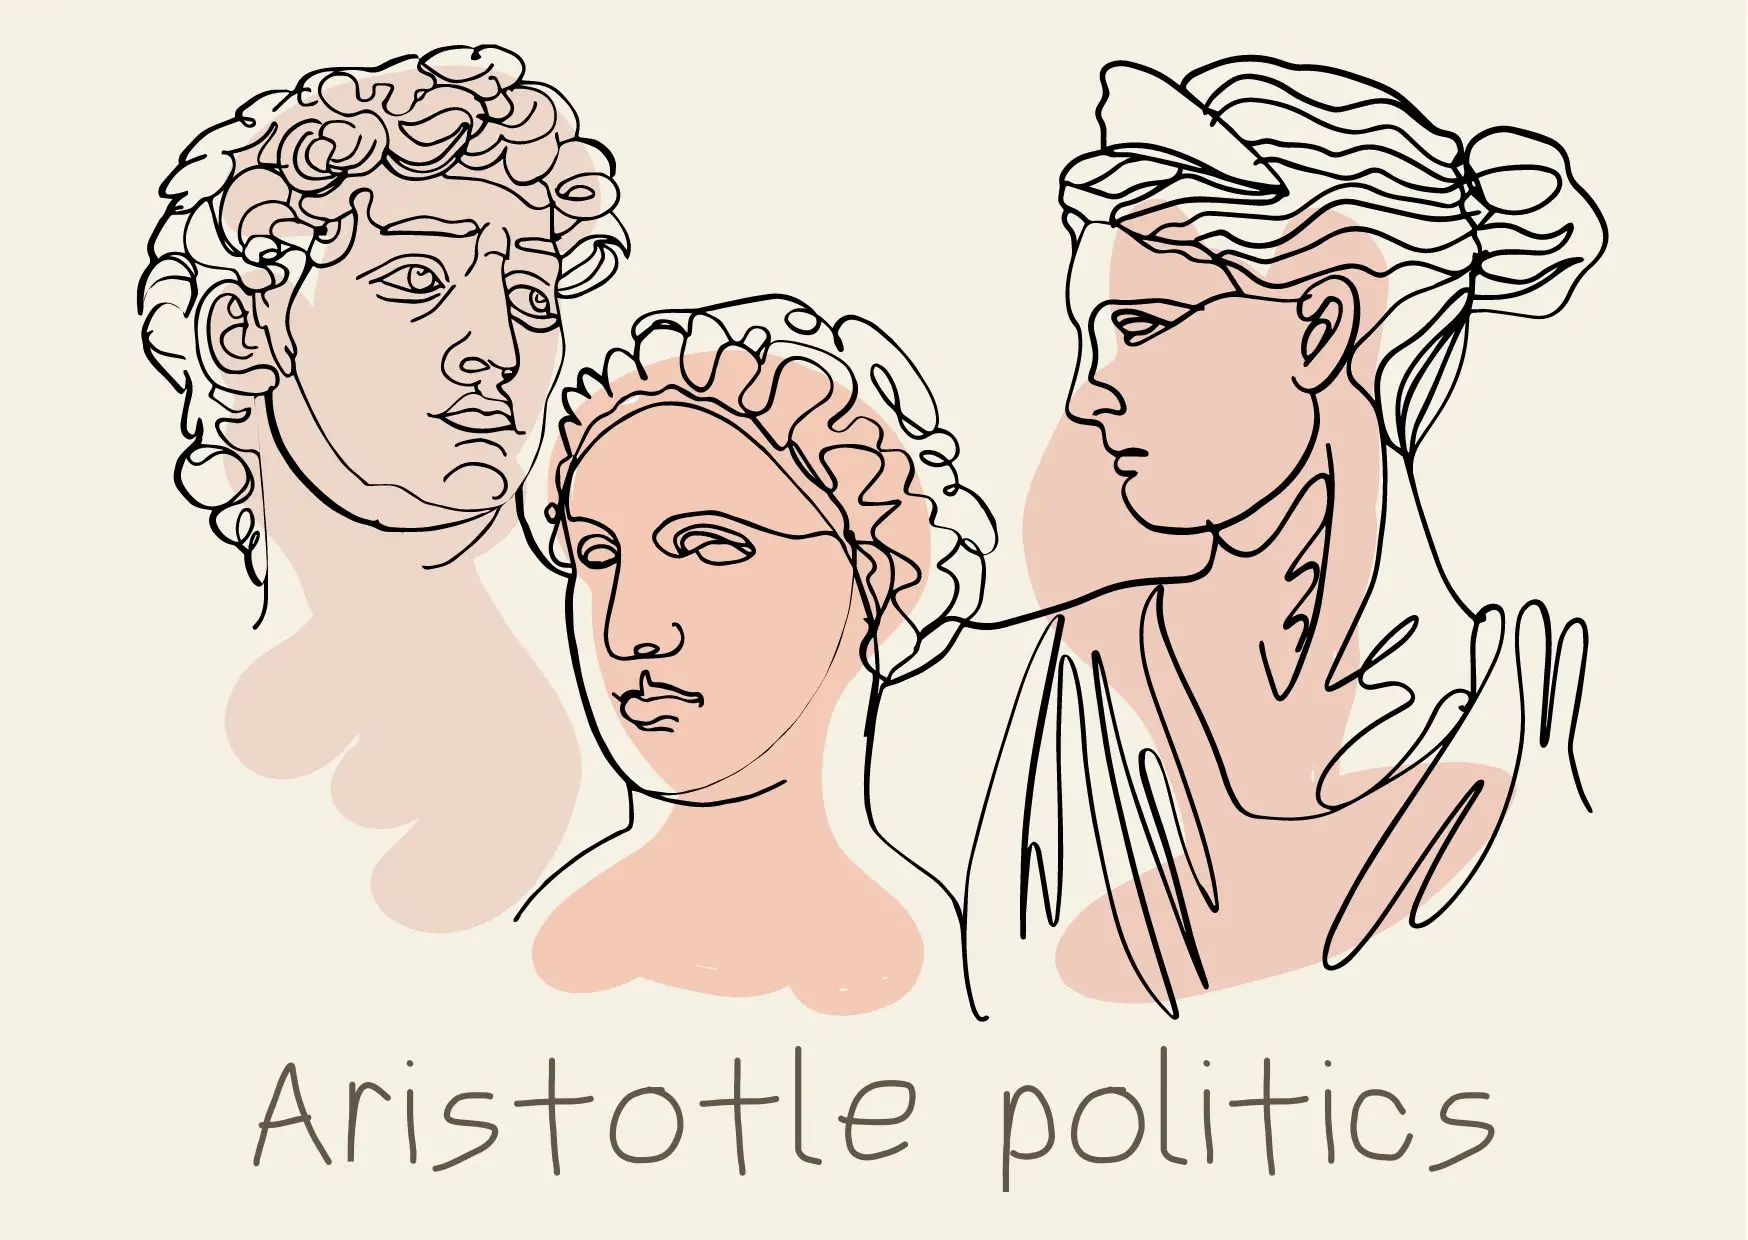 Politik des Aristoteles: Zusammenfassung, Analyse, Demokratie, Glück